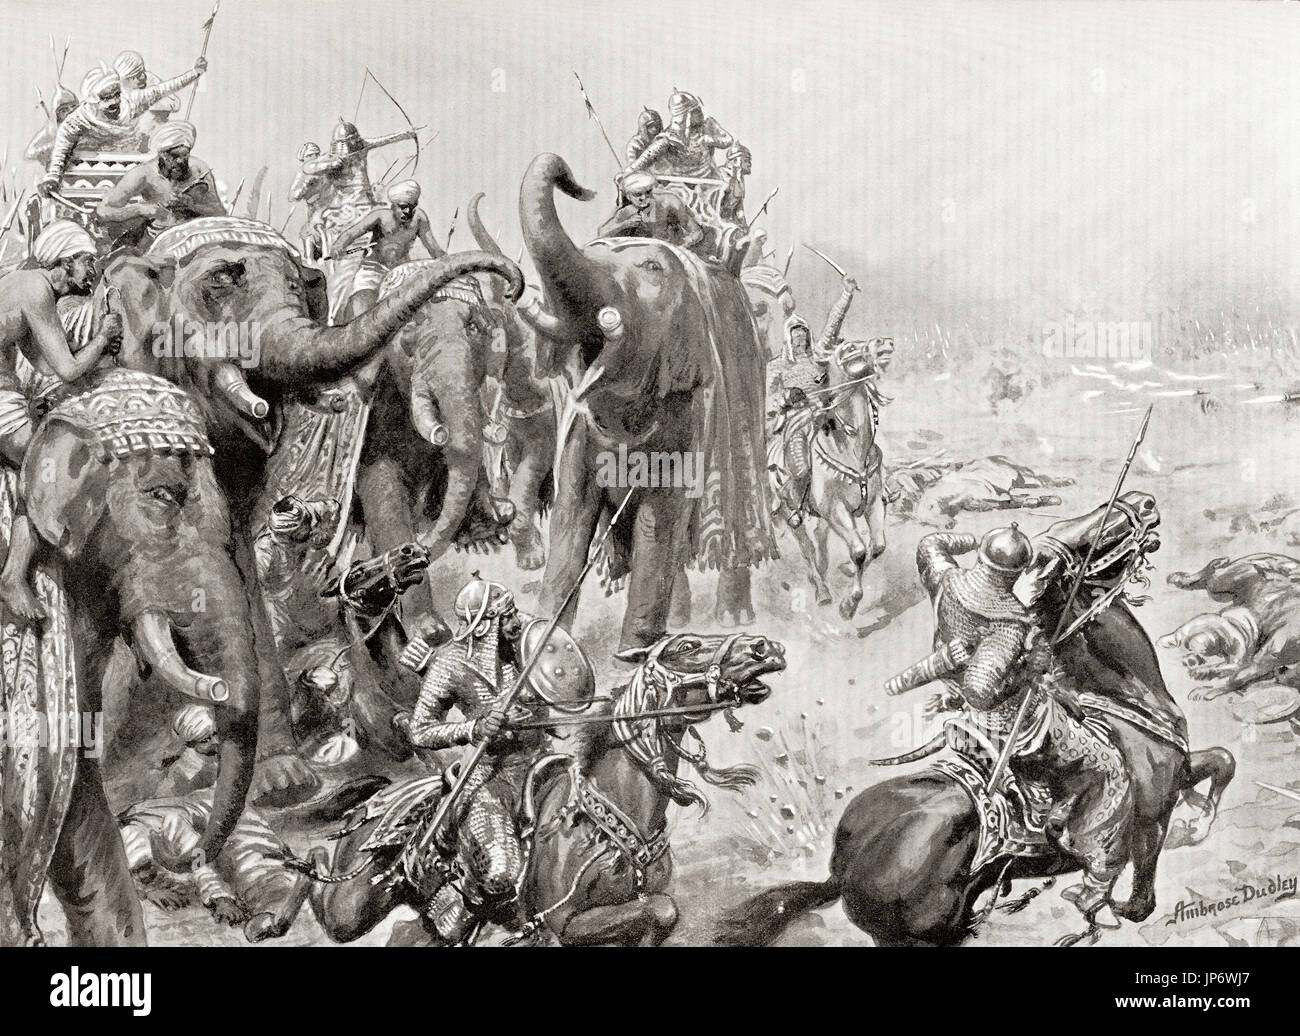 Babur introduce pistole di campo nella battaglia di Panipat, in India nel 1526. Questa è stata una delle prime battaglie che hanno coinvolto la polvere da sparo delle armi da fuoco e artiglieria di campo in India. Dopo la pittura da Ambrogio Dudley (1867-1951). Da Hutchinson nella storia delle nazioni, pubblicato 1915. Foto Stock